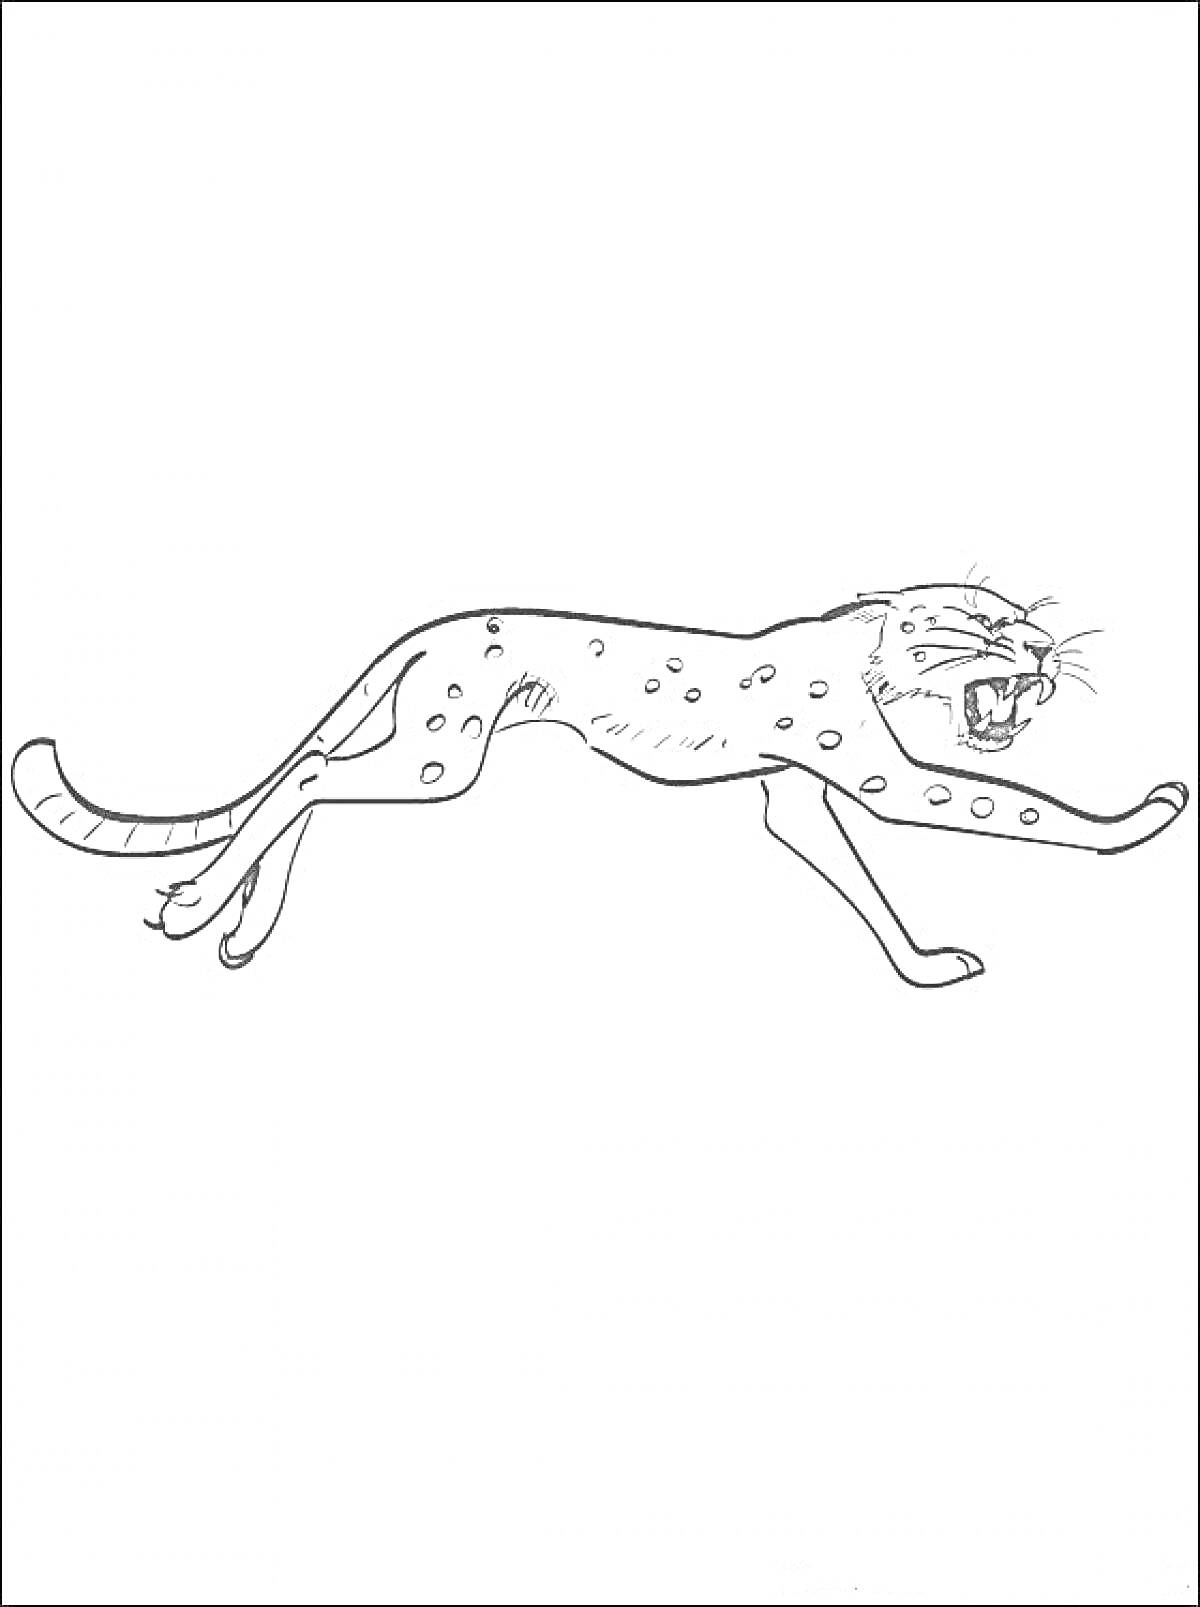 Леопард в прыжке с оскалом